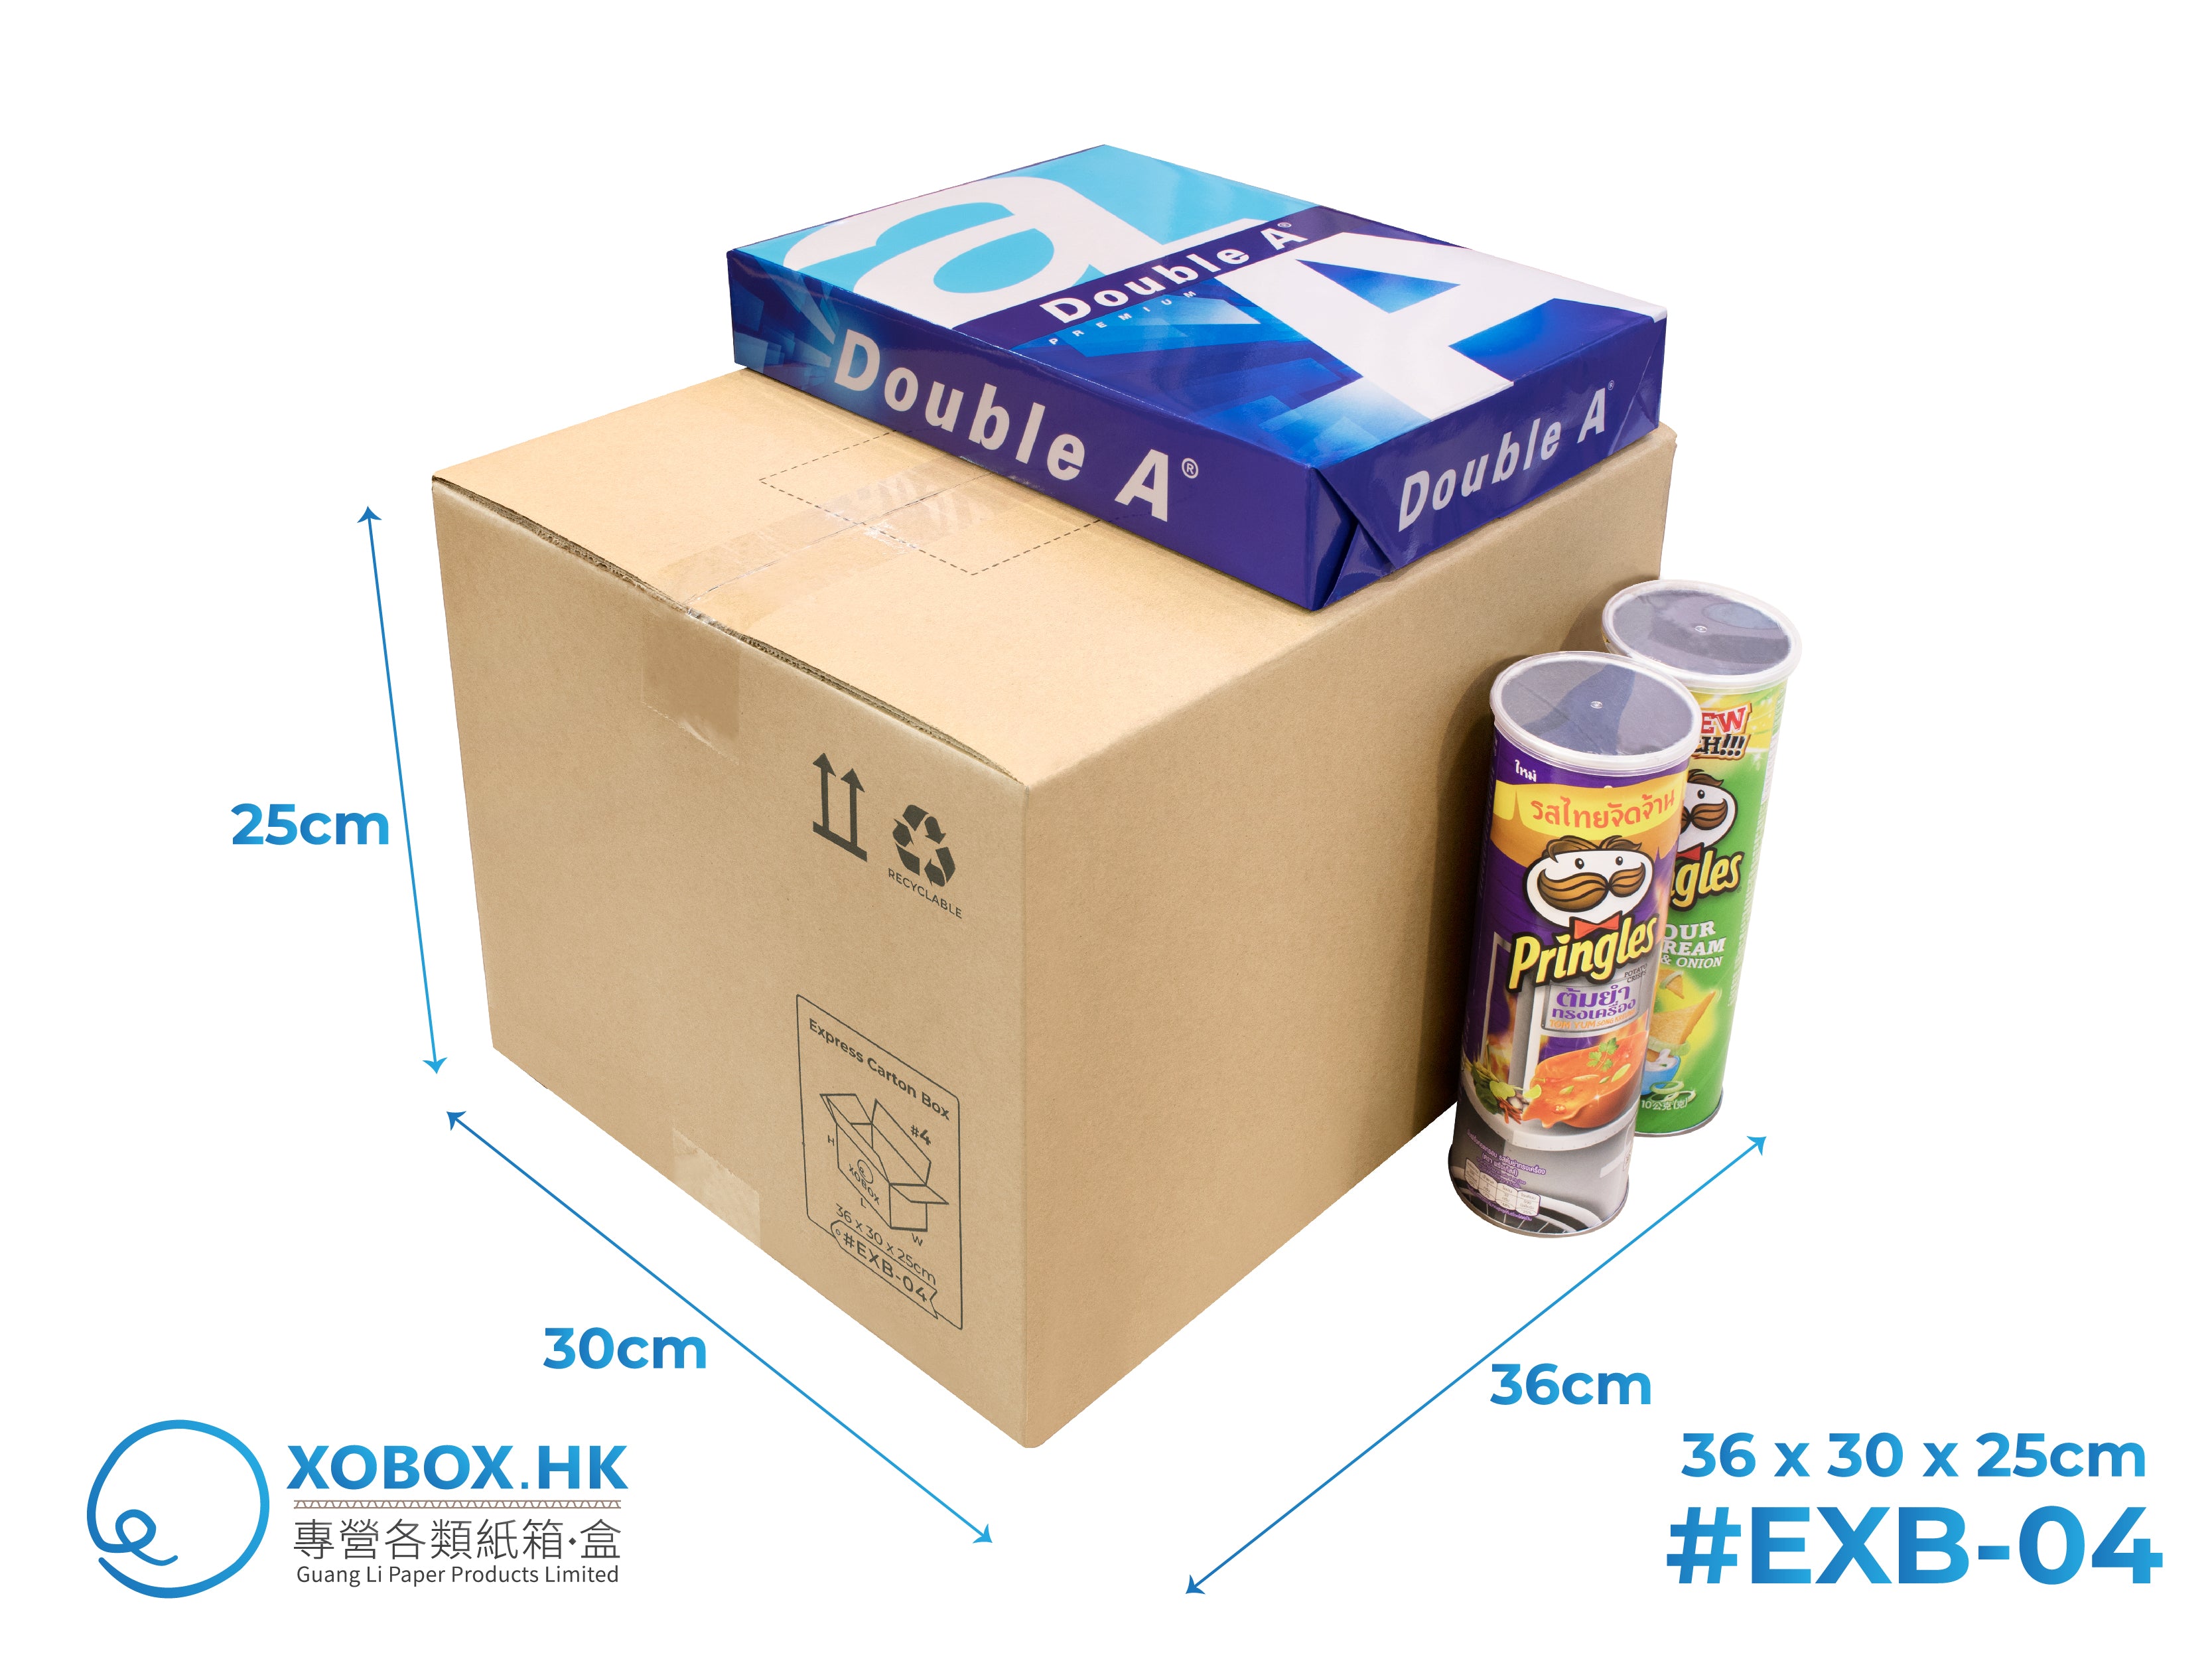 Express Carton Box 快遞紙箱